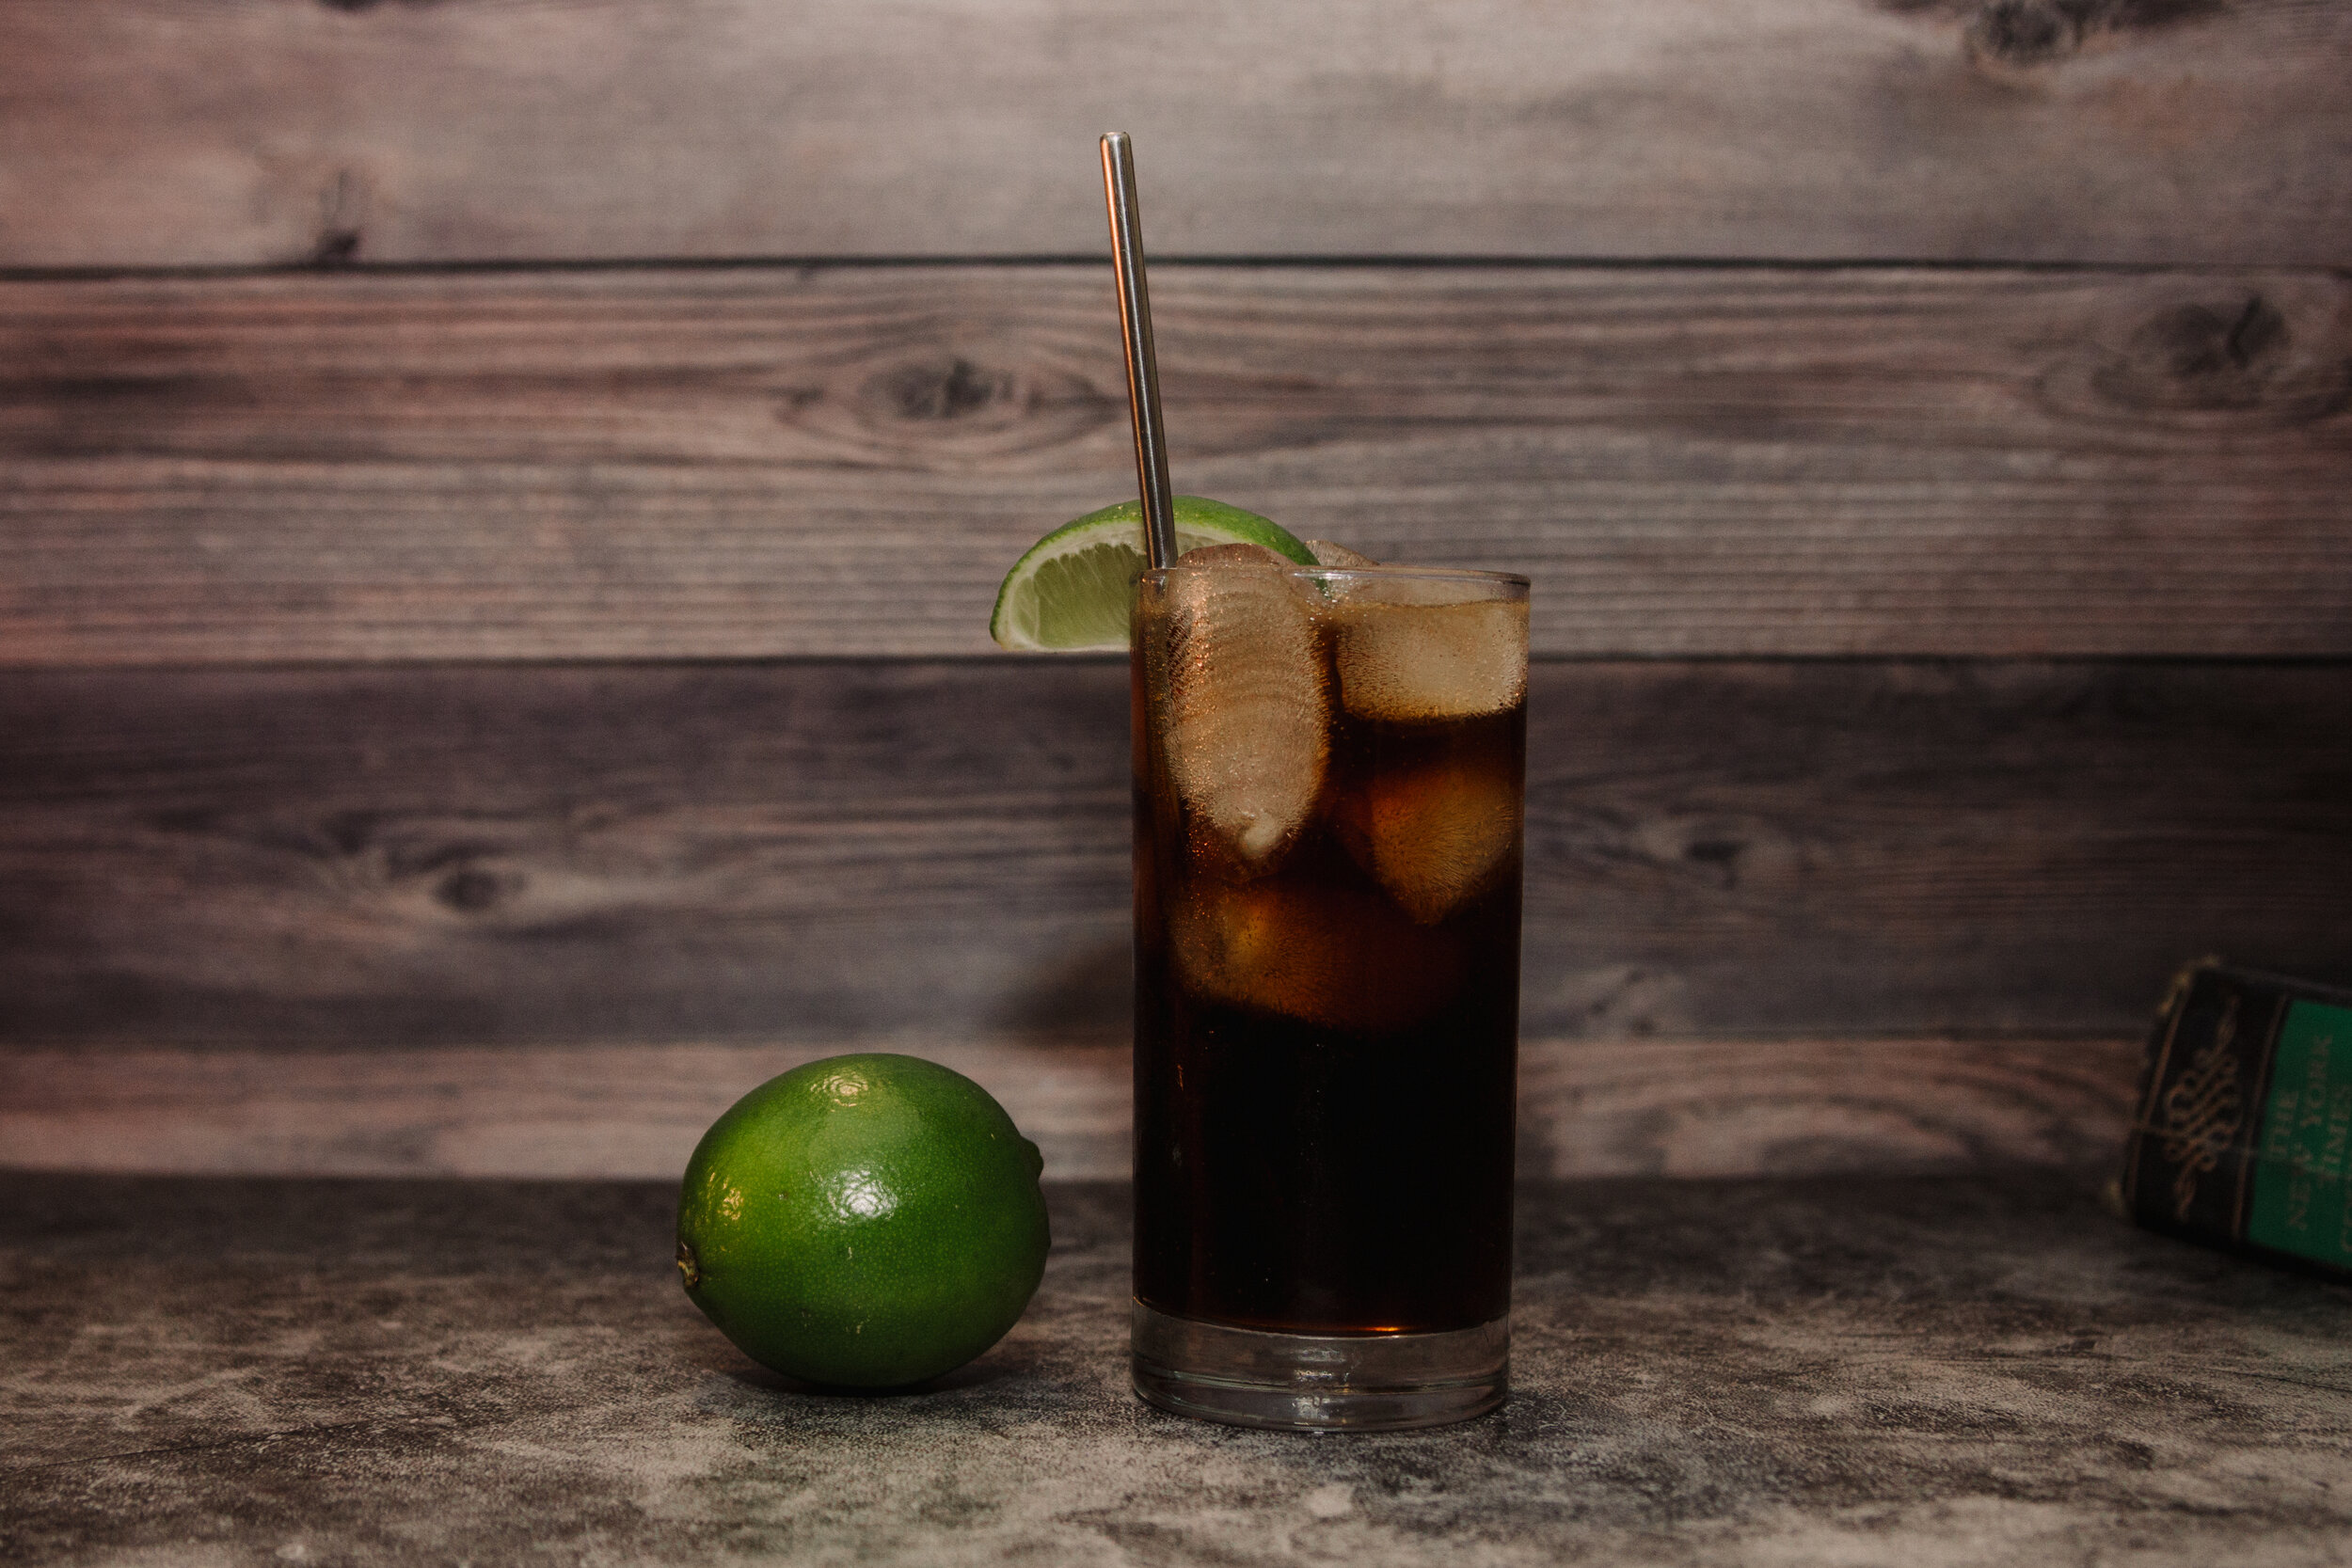 Best Rum & Coke Recipe - How to Make a Cuba Libre